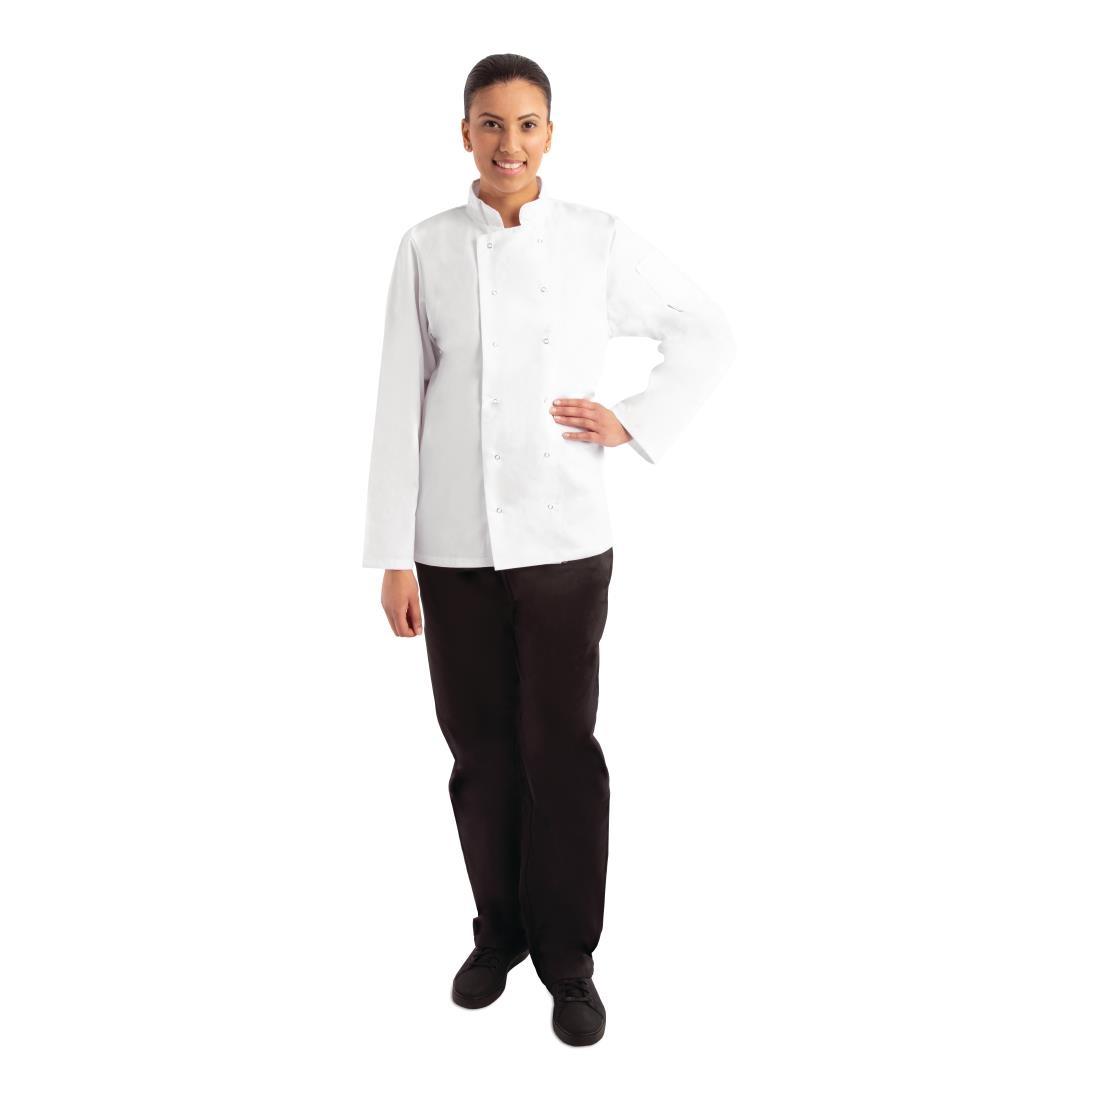 Whites Vegas Unisex Chefs Jacket Long Sleeve White XS - A134-XS  - 7